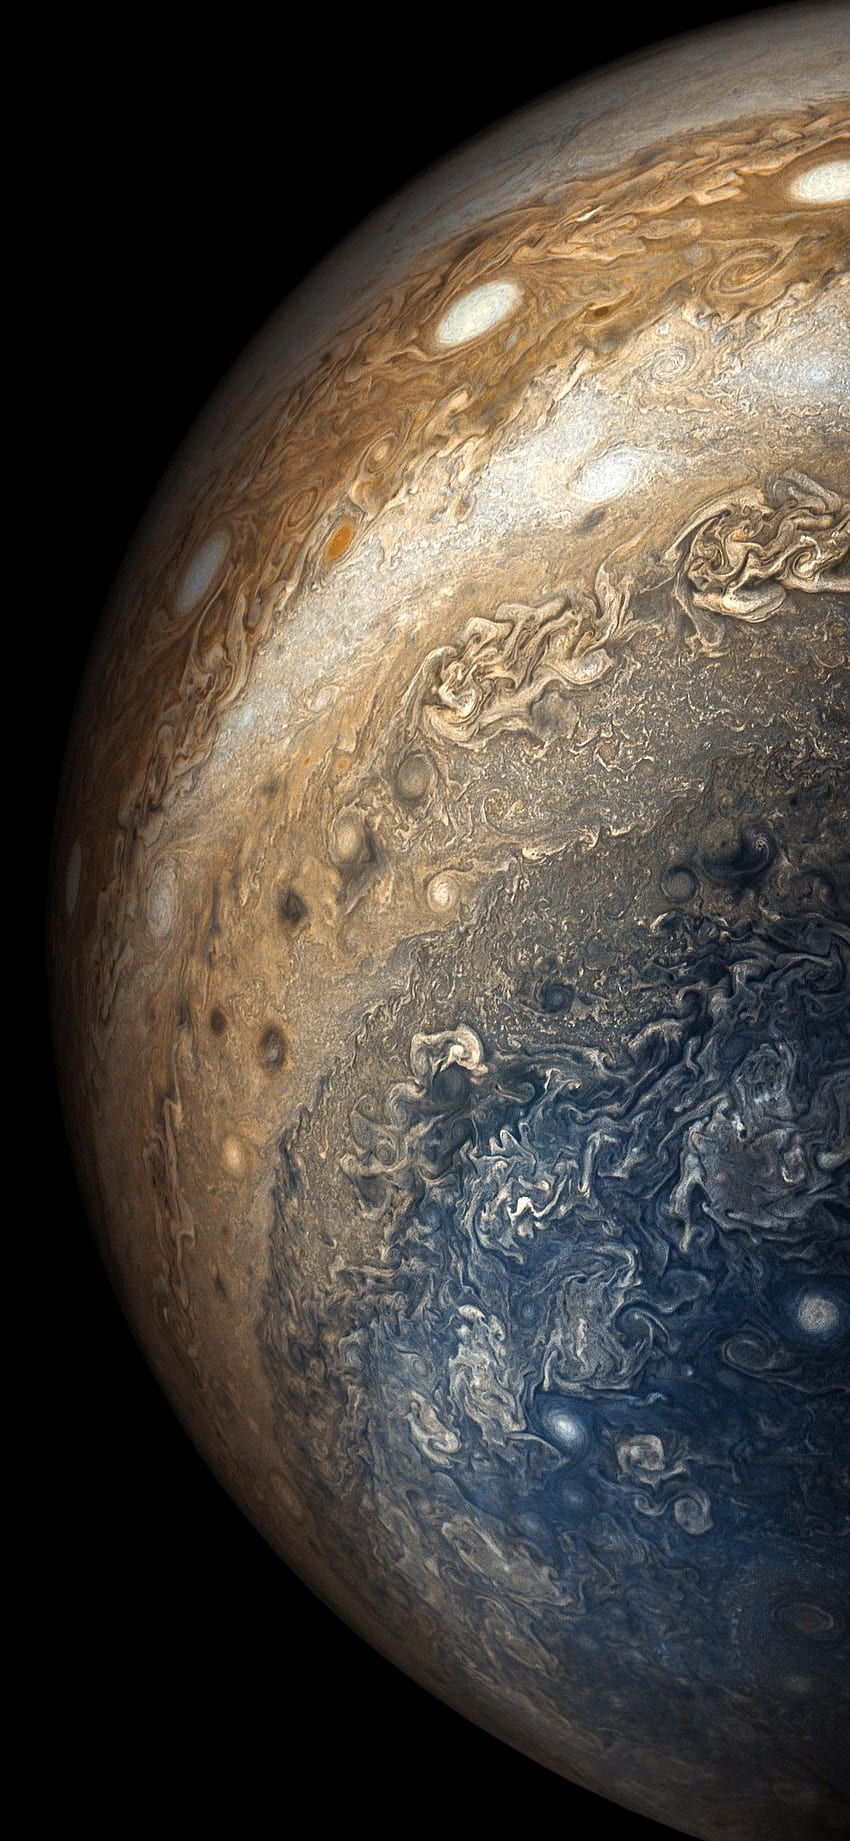 1080P Free download | Jupiter Planet iPhone X, iPhone 10 , NASA Jupiter ...